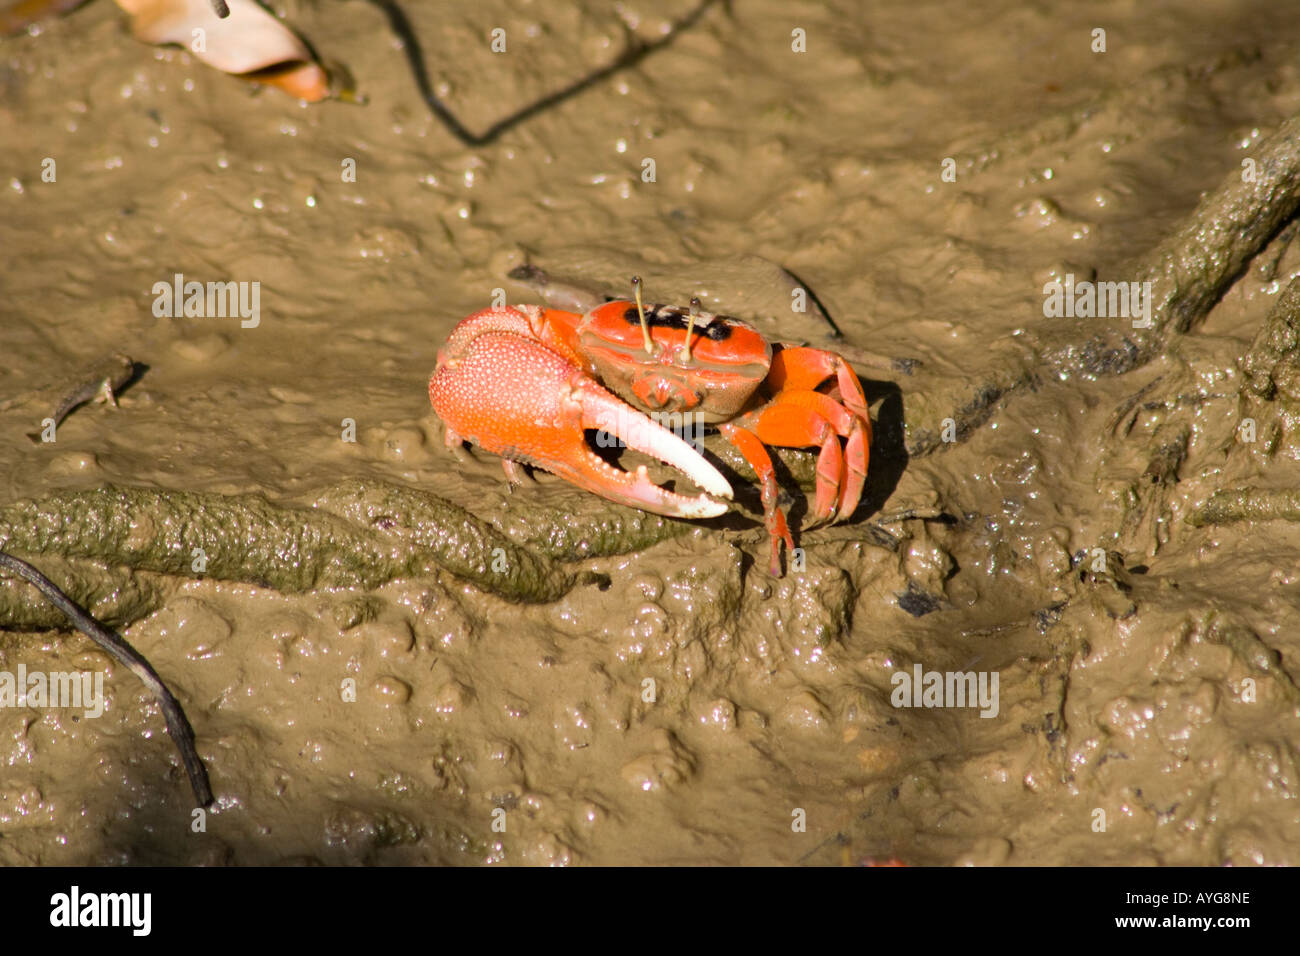 One clawed red crab at Hong Kong Wetland Park Hong Kong SAR China Stock Photo